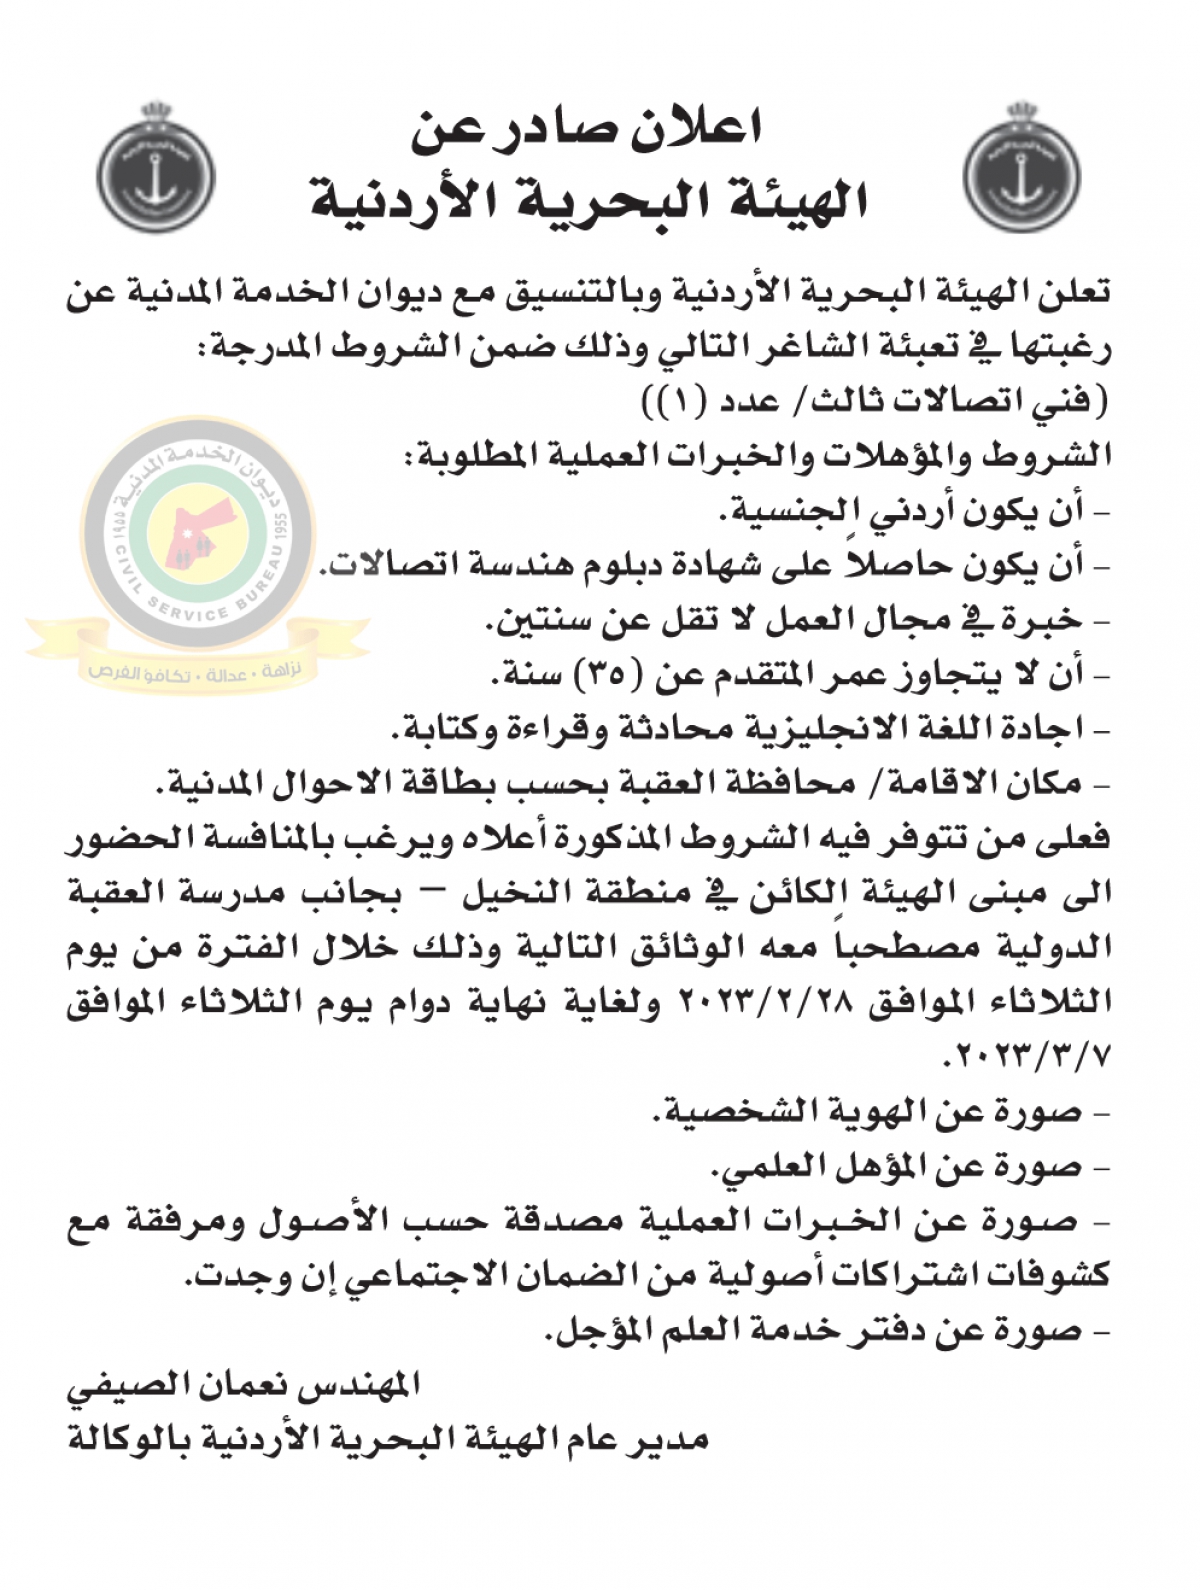 اعلان وظائف شاغرة صادرعن الهيئة البحرية الأردنية